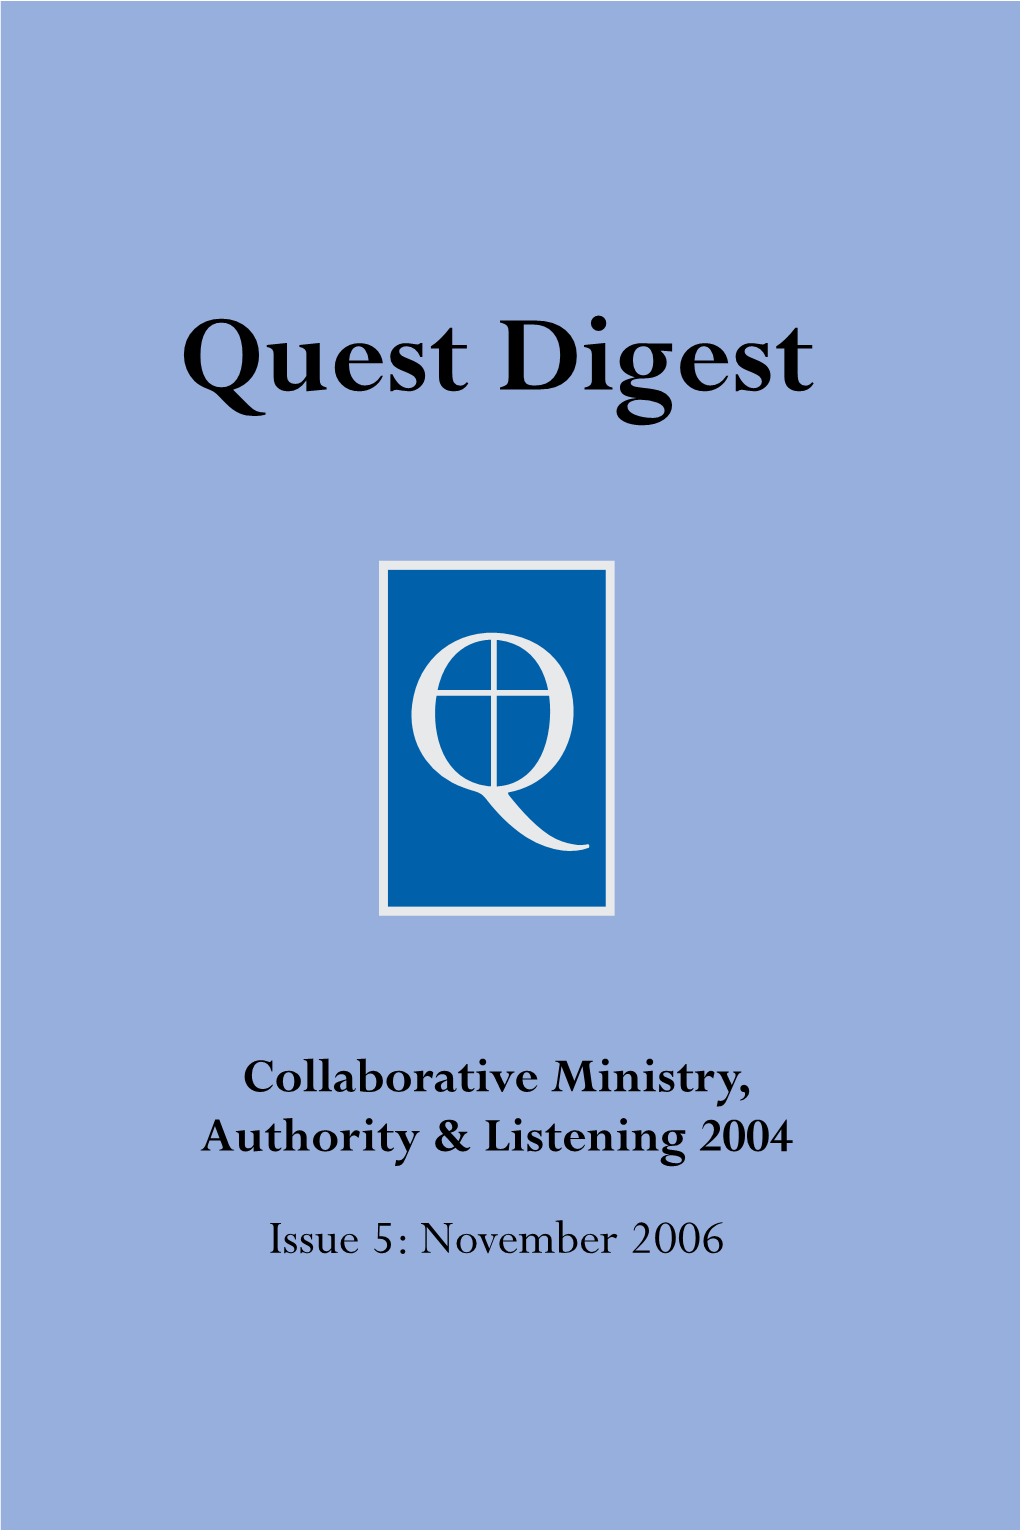 Quest Digest